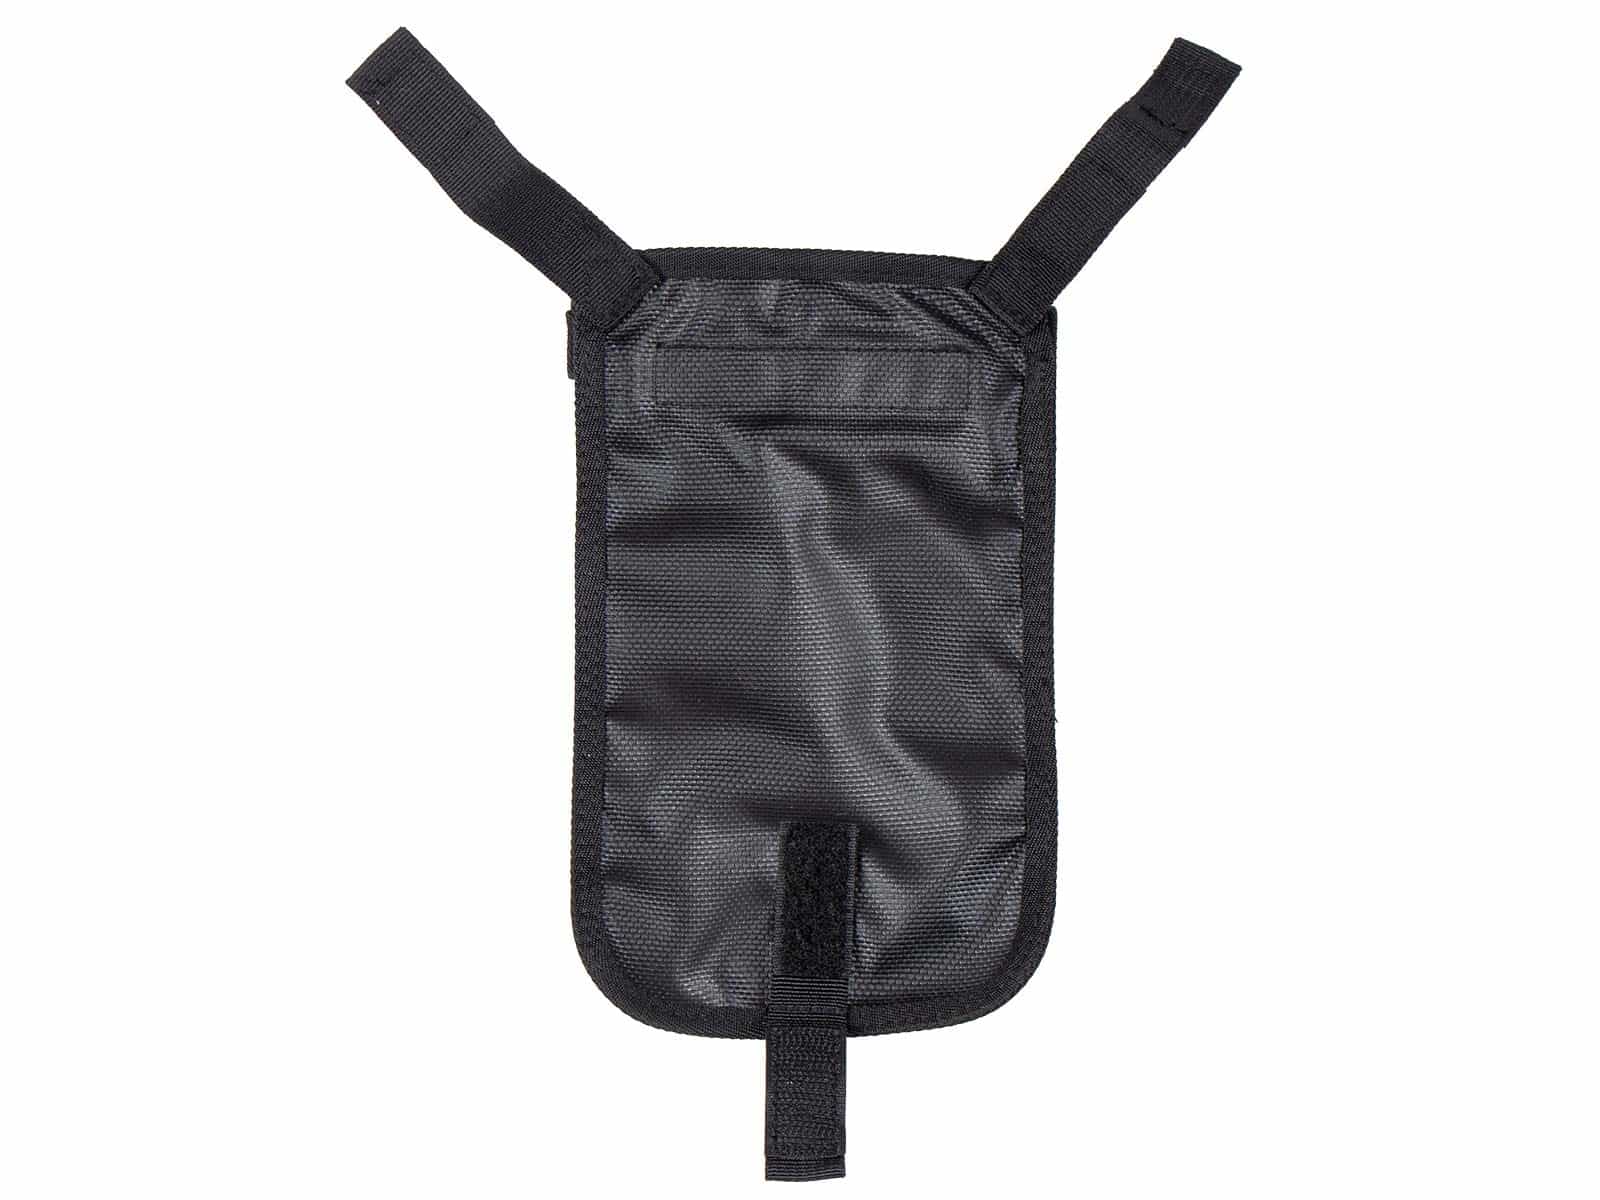 Smartphone bag for Street Daypack & Royster tankbag & Epic - waterproof